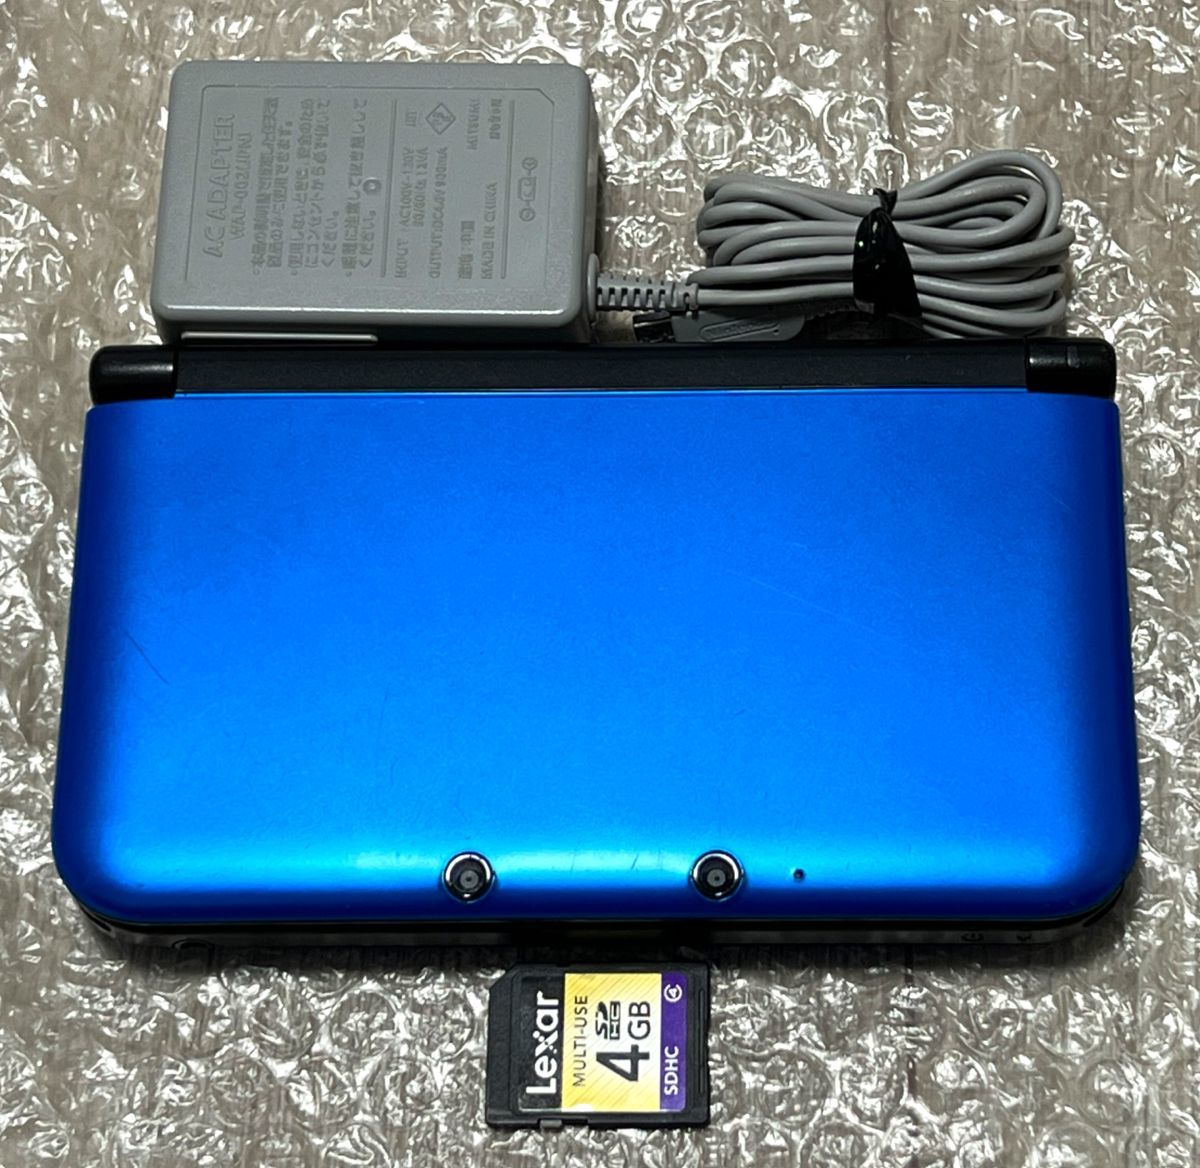 〈良品・動作確認済み〉ニンテンドー3DSLL 本体 ブルー×ブラック SPR-001 充電器 NINTENDO 3DS LL Blue Black_画像1